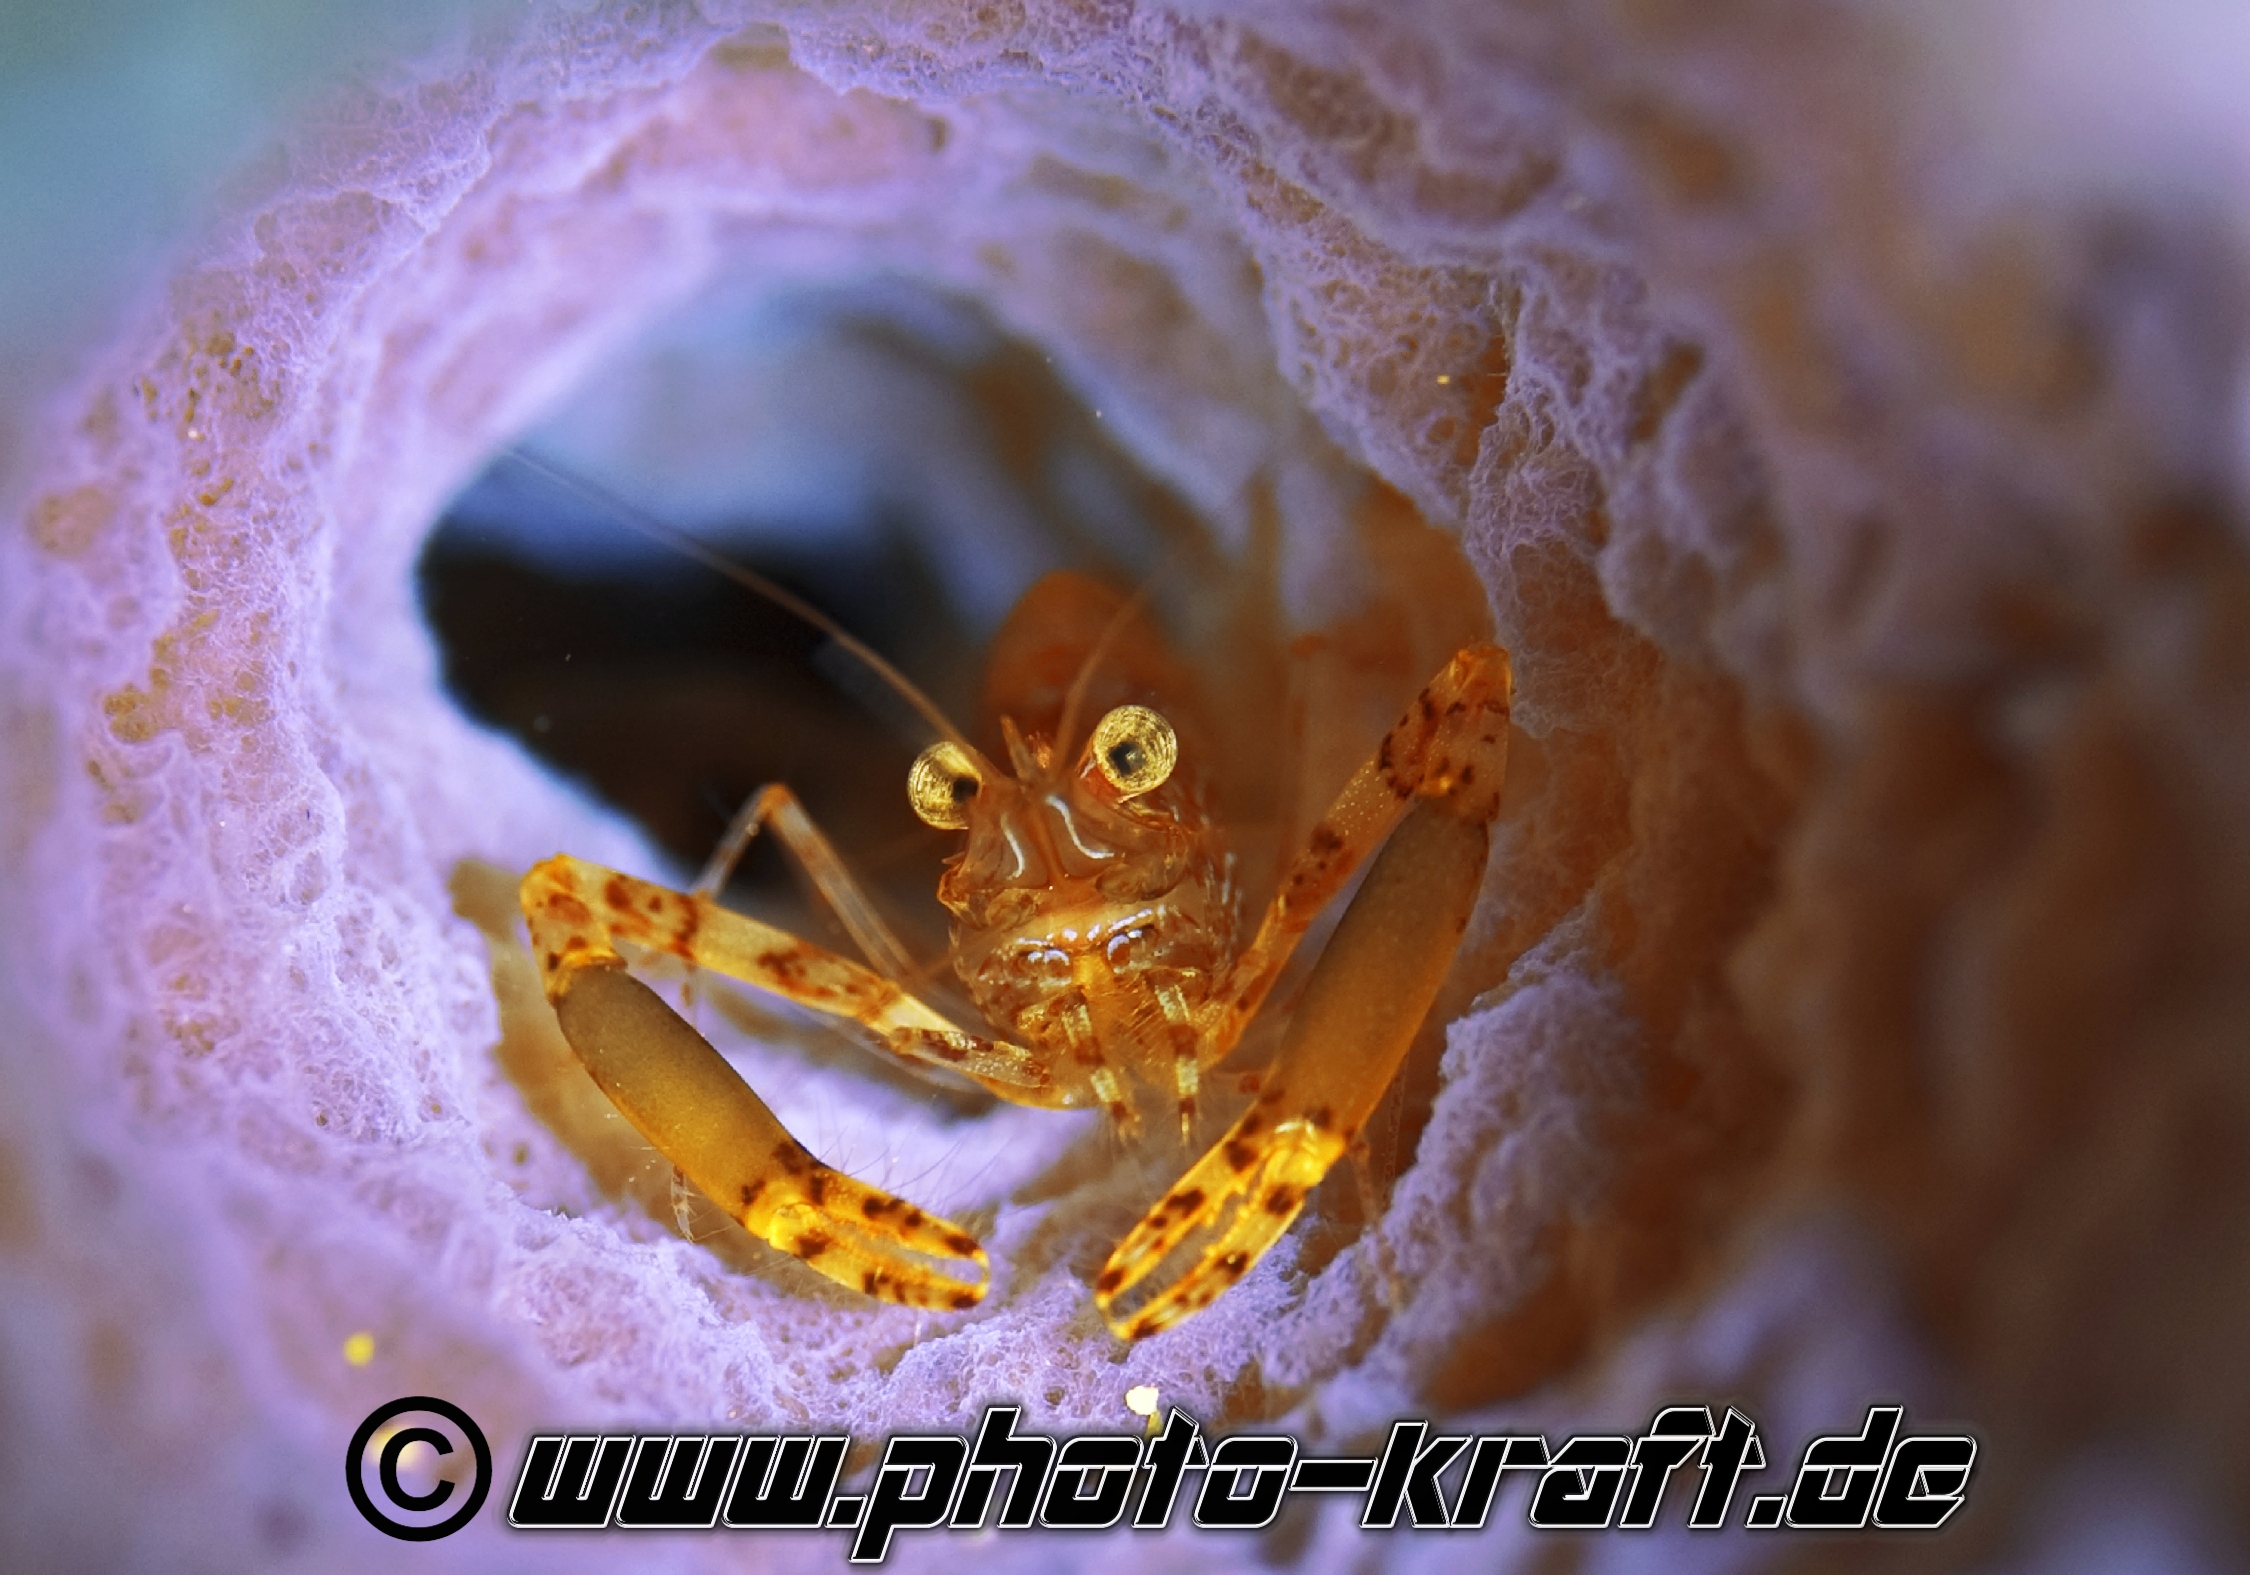 Shrimp in einem Schwamm